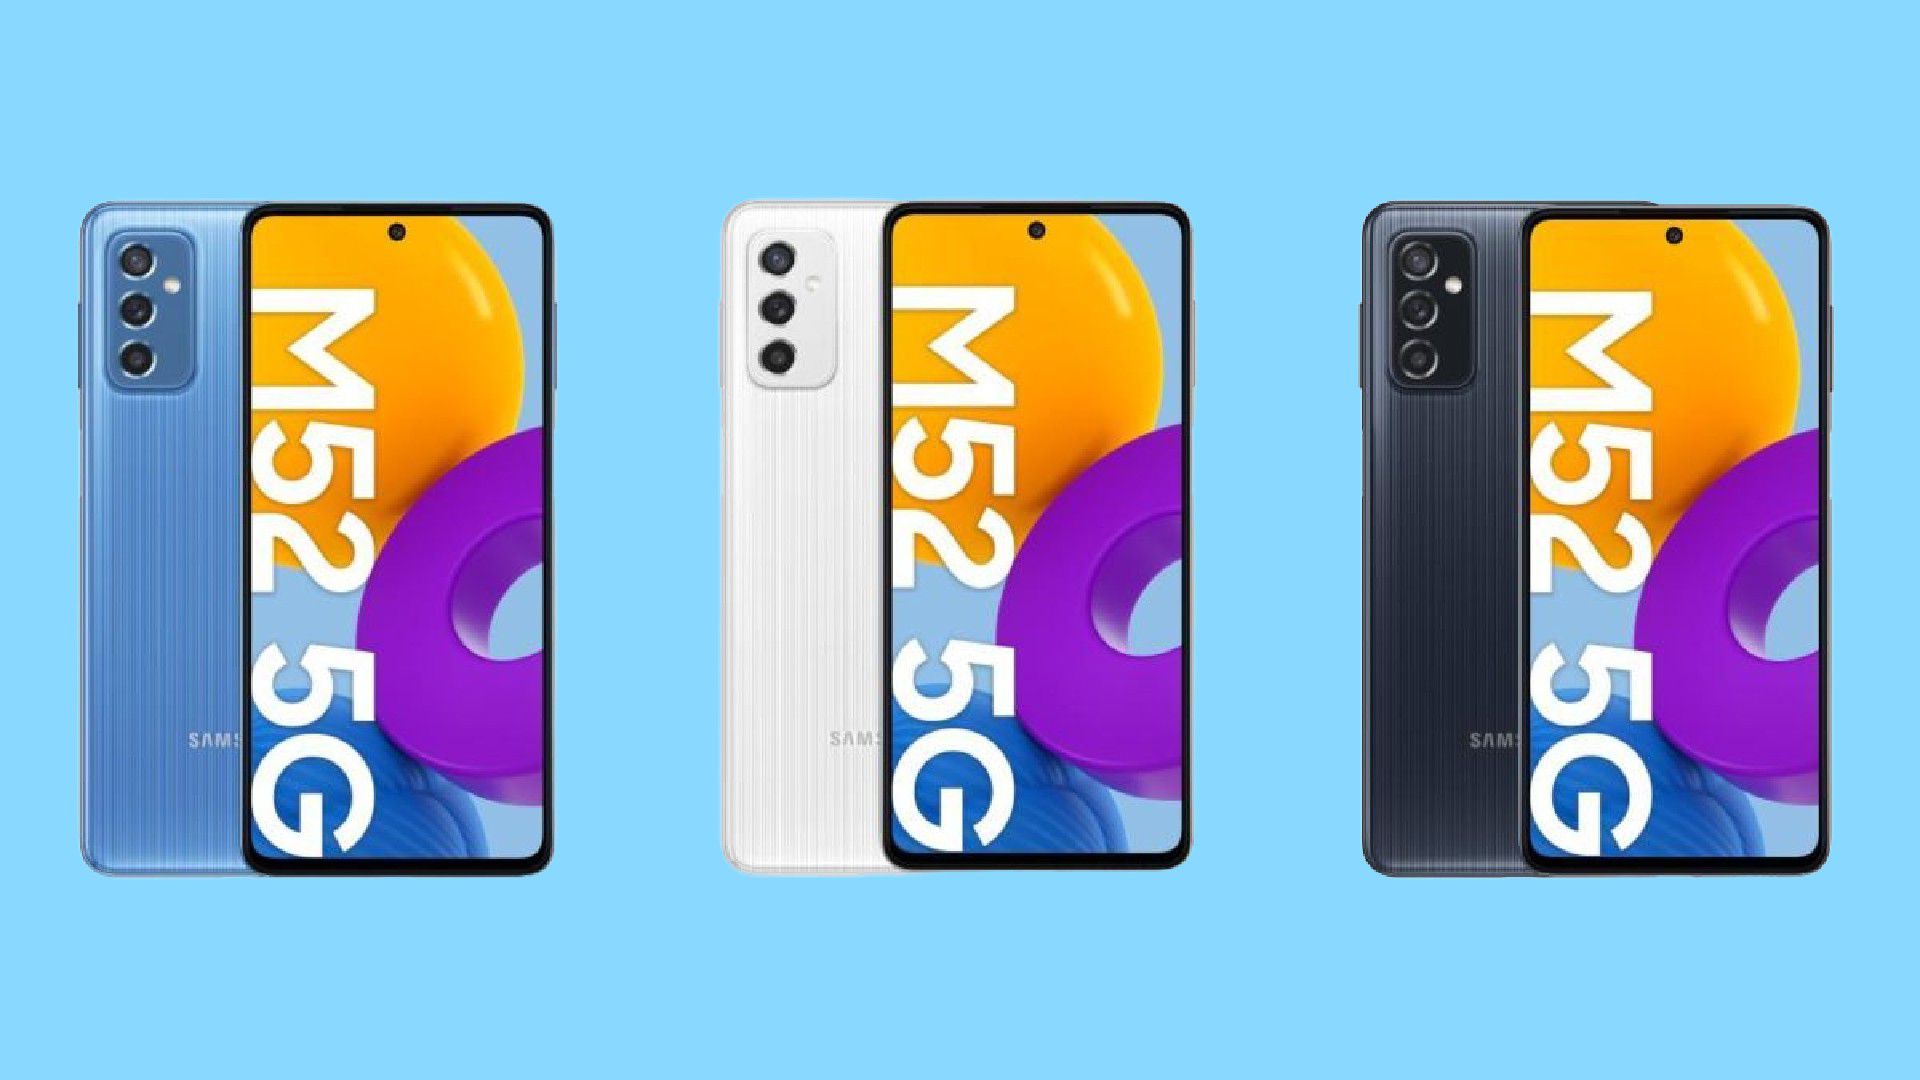 Montagem com fundo azul e 3 exemplares do celular Samsung Galaxy M52